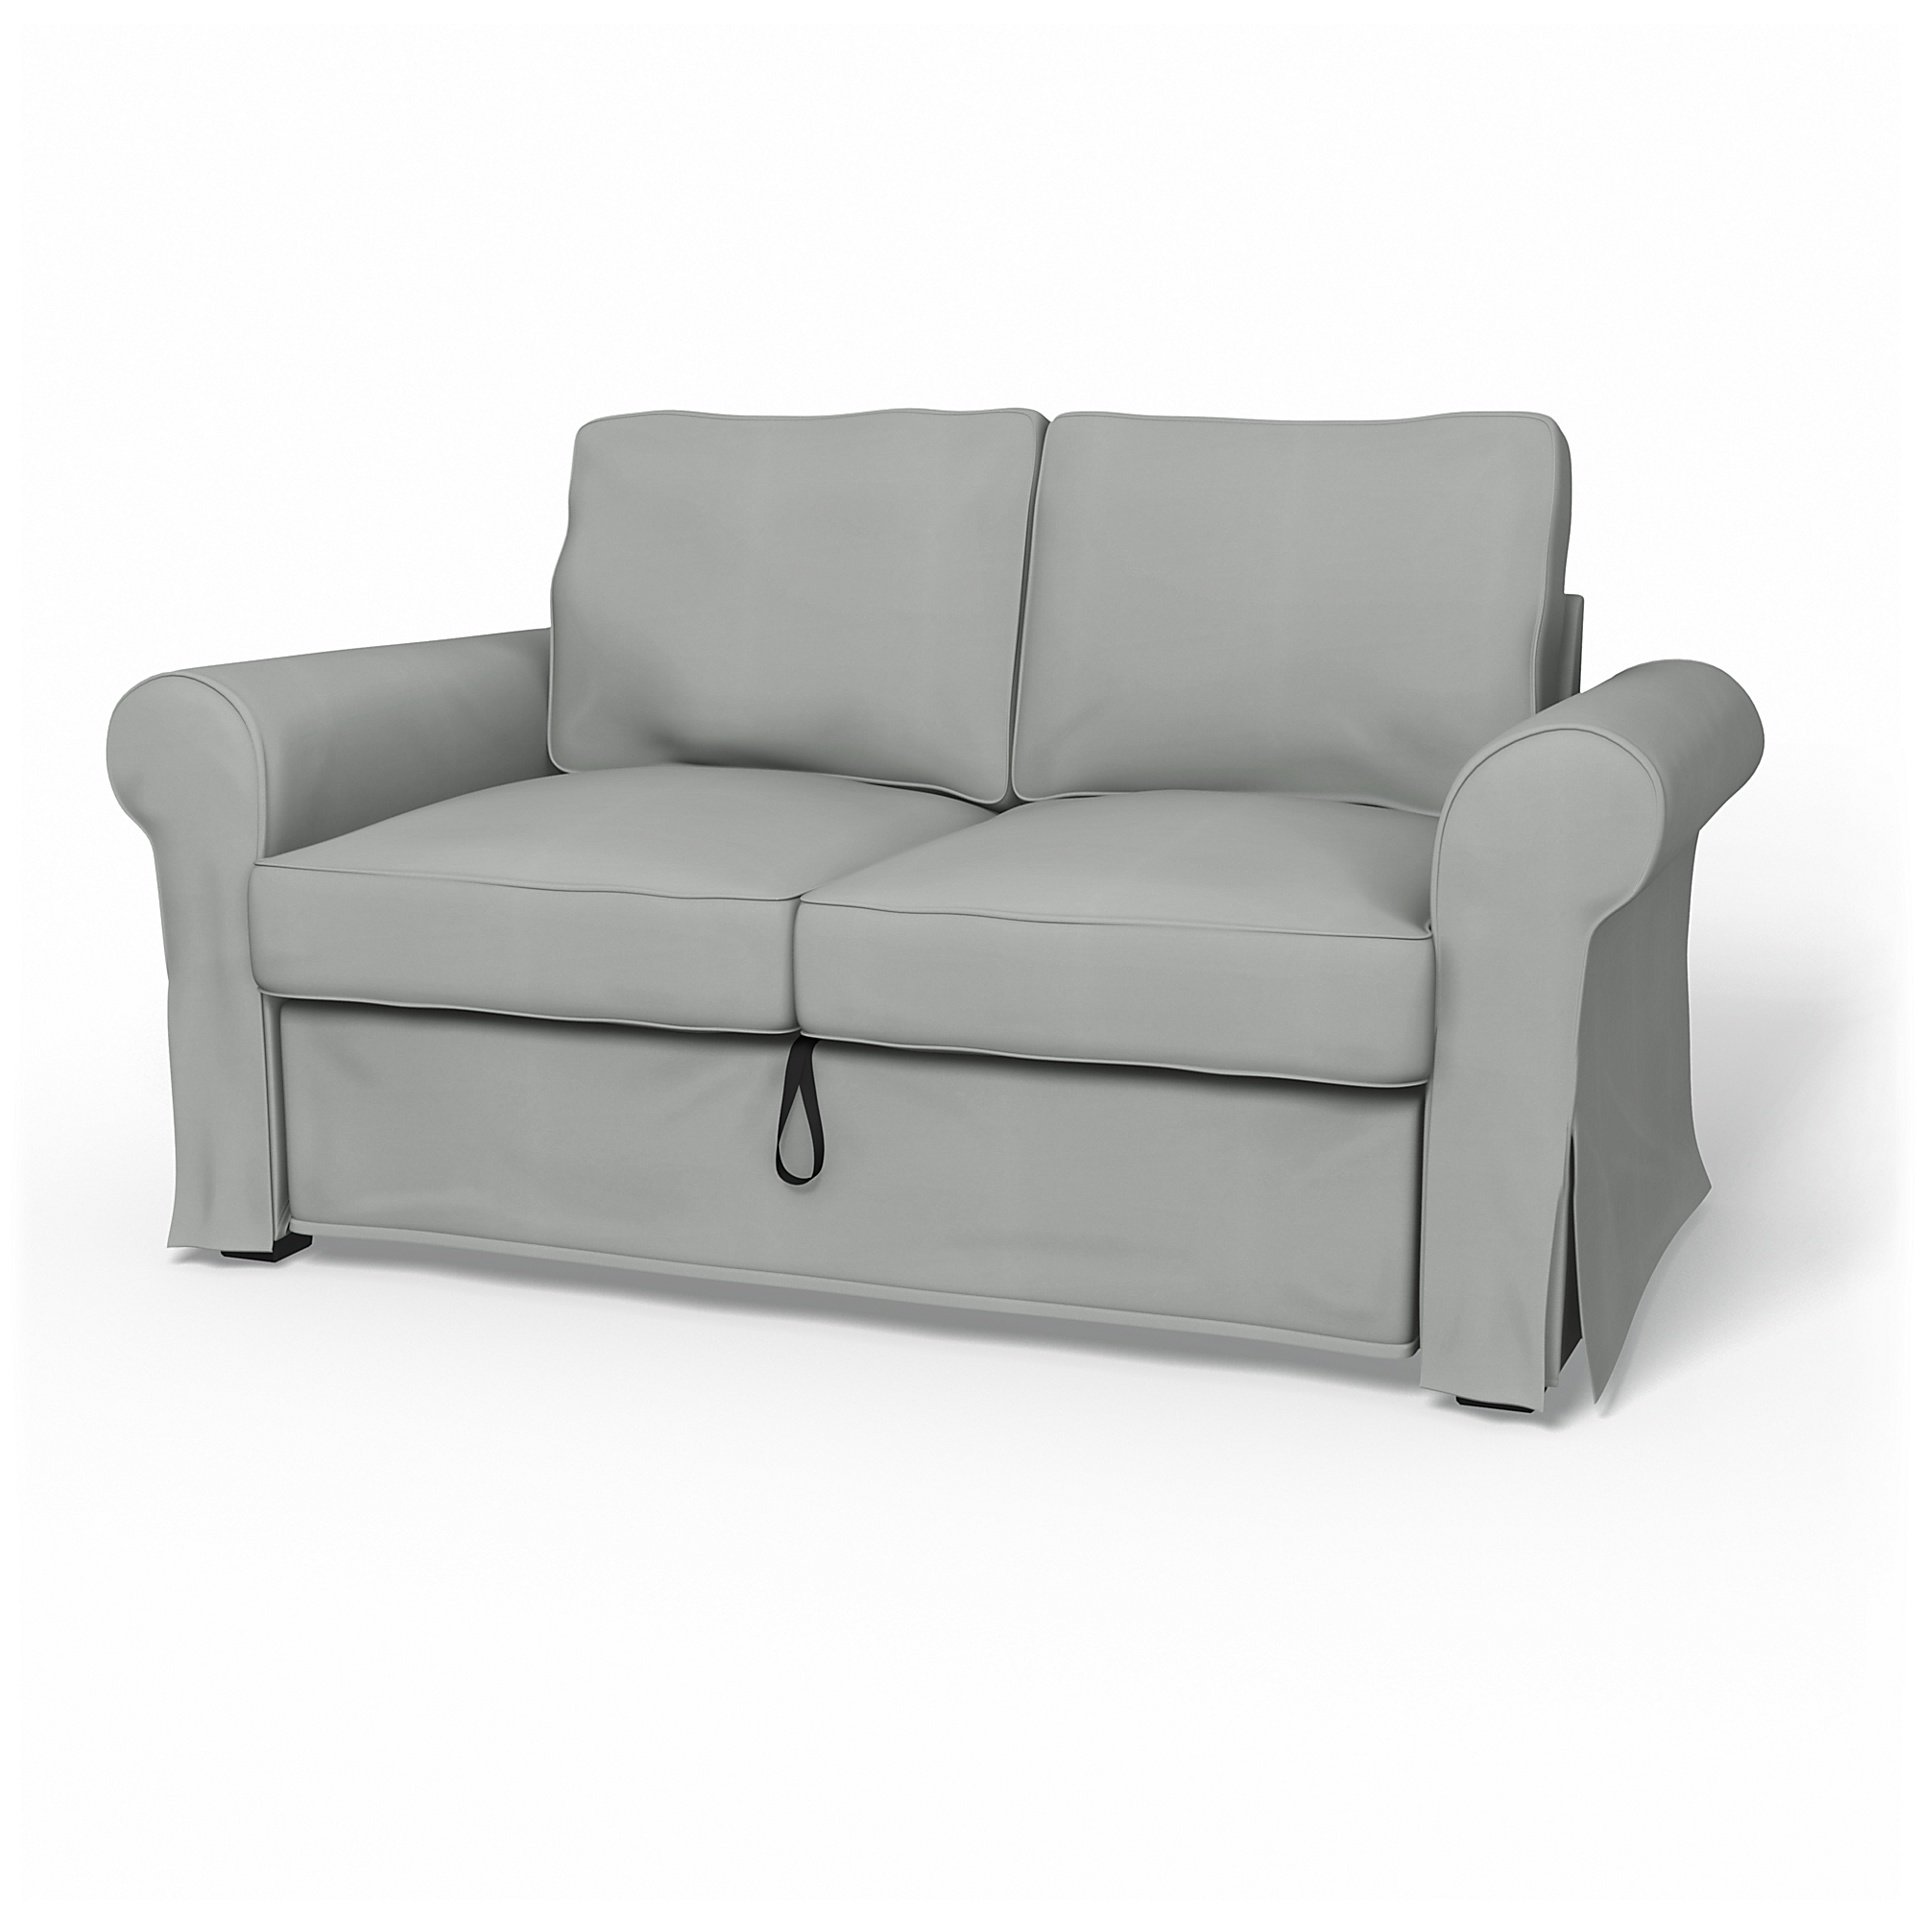 IKEA - Backabro 2 Seater Sofa Bed Cover, Silver Grey, Cotton - Bemz